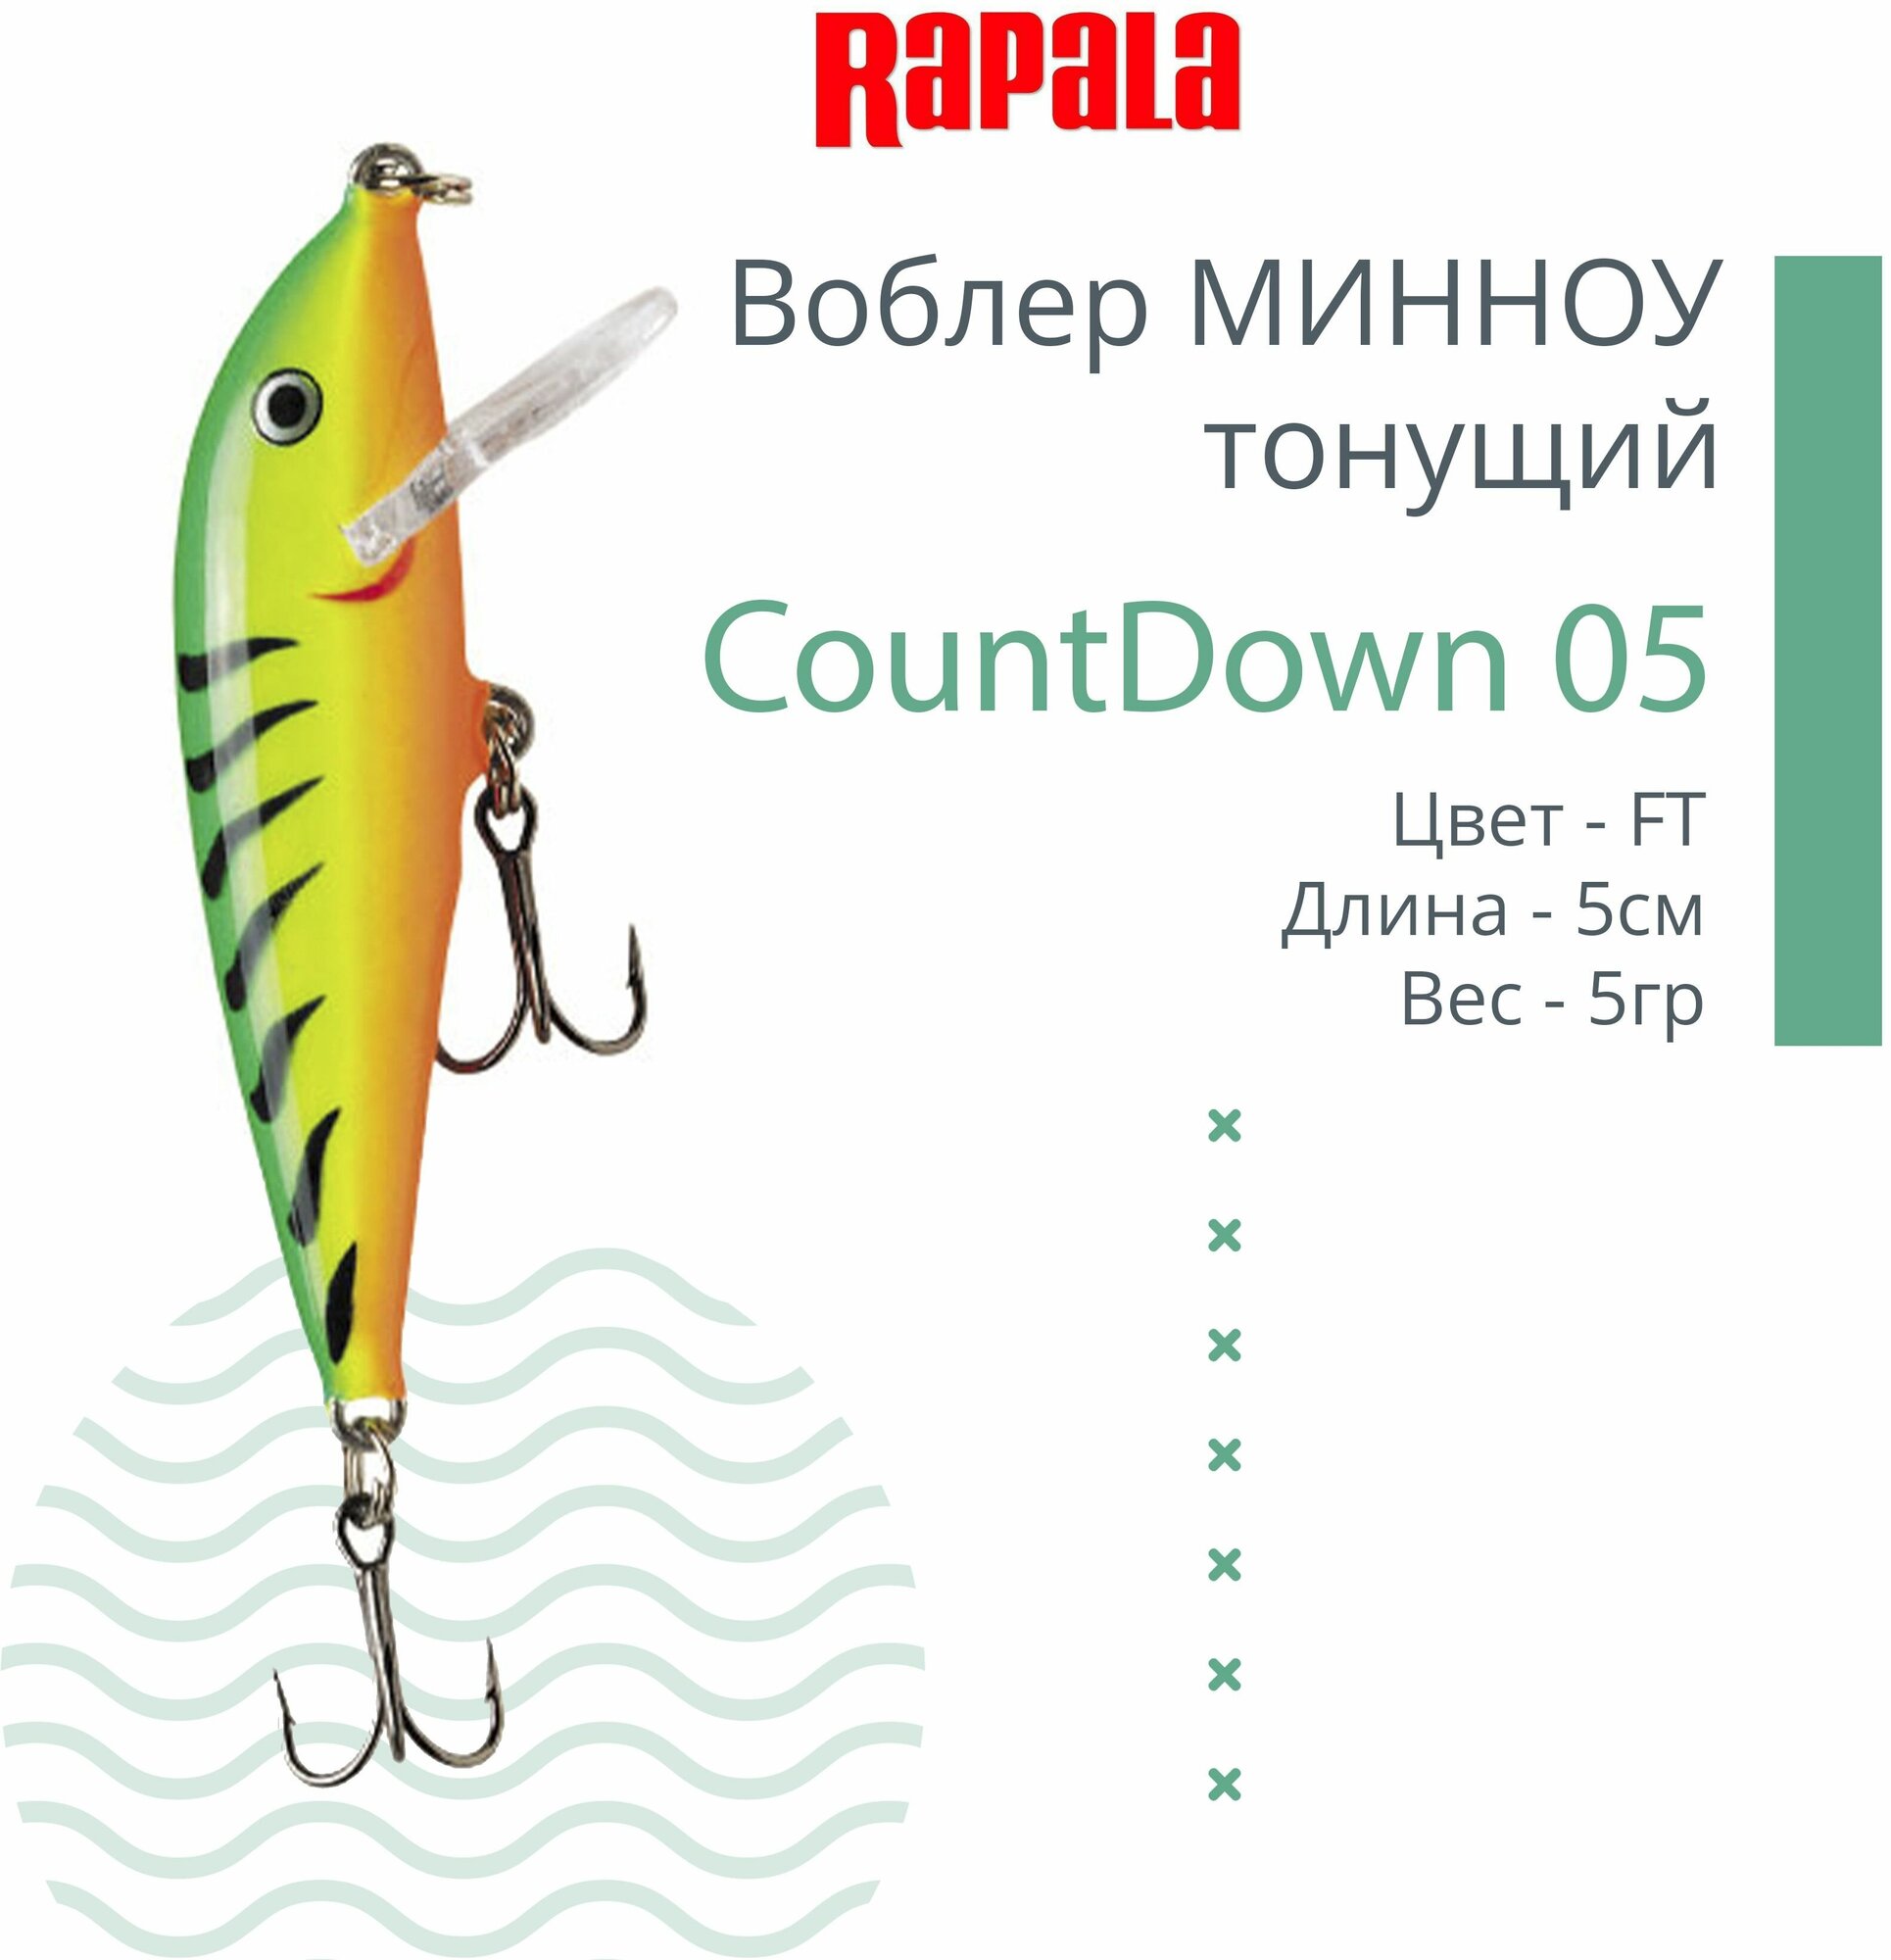 Воблер для рыбалки RAPALA CountDown 05 , 5см, 5г, цвет FT, тонущий